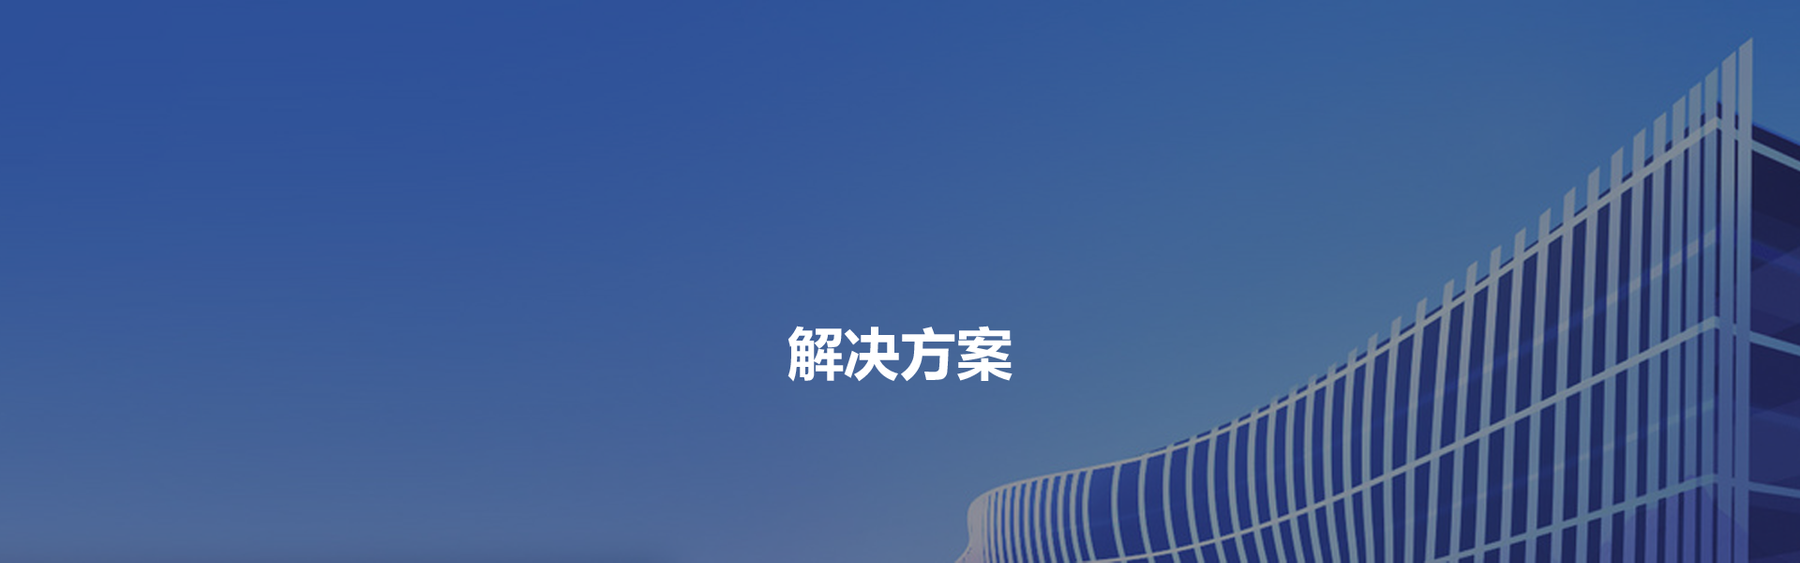 Z6尊龙·凯时(中国)-官方网站_活动4570